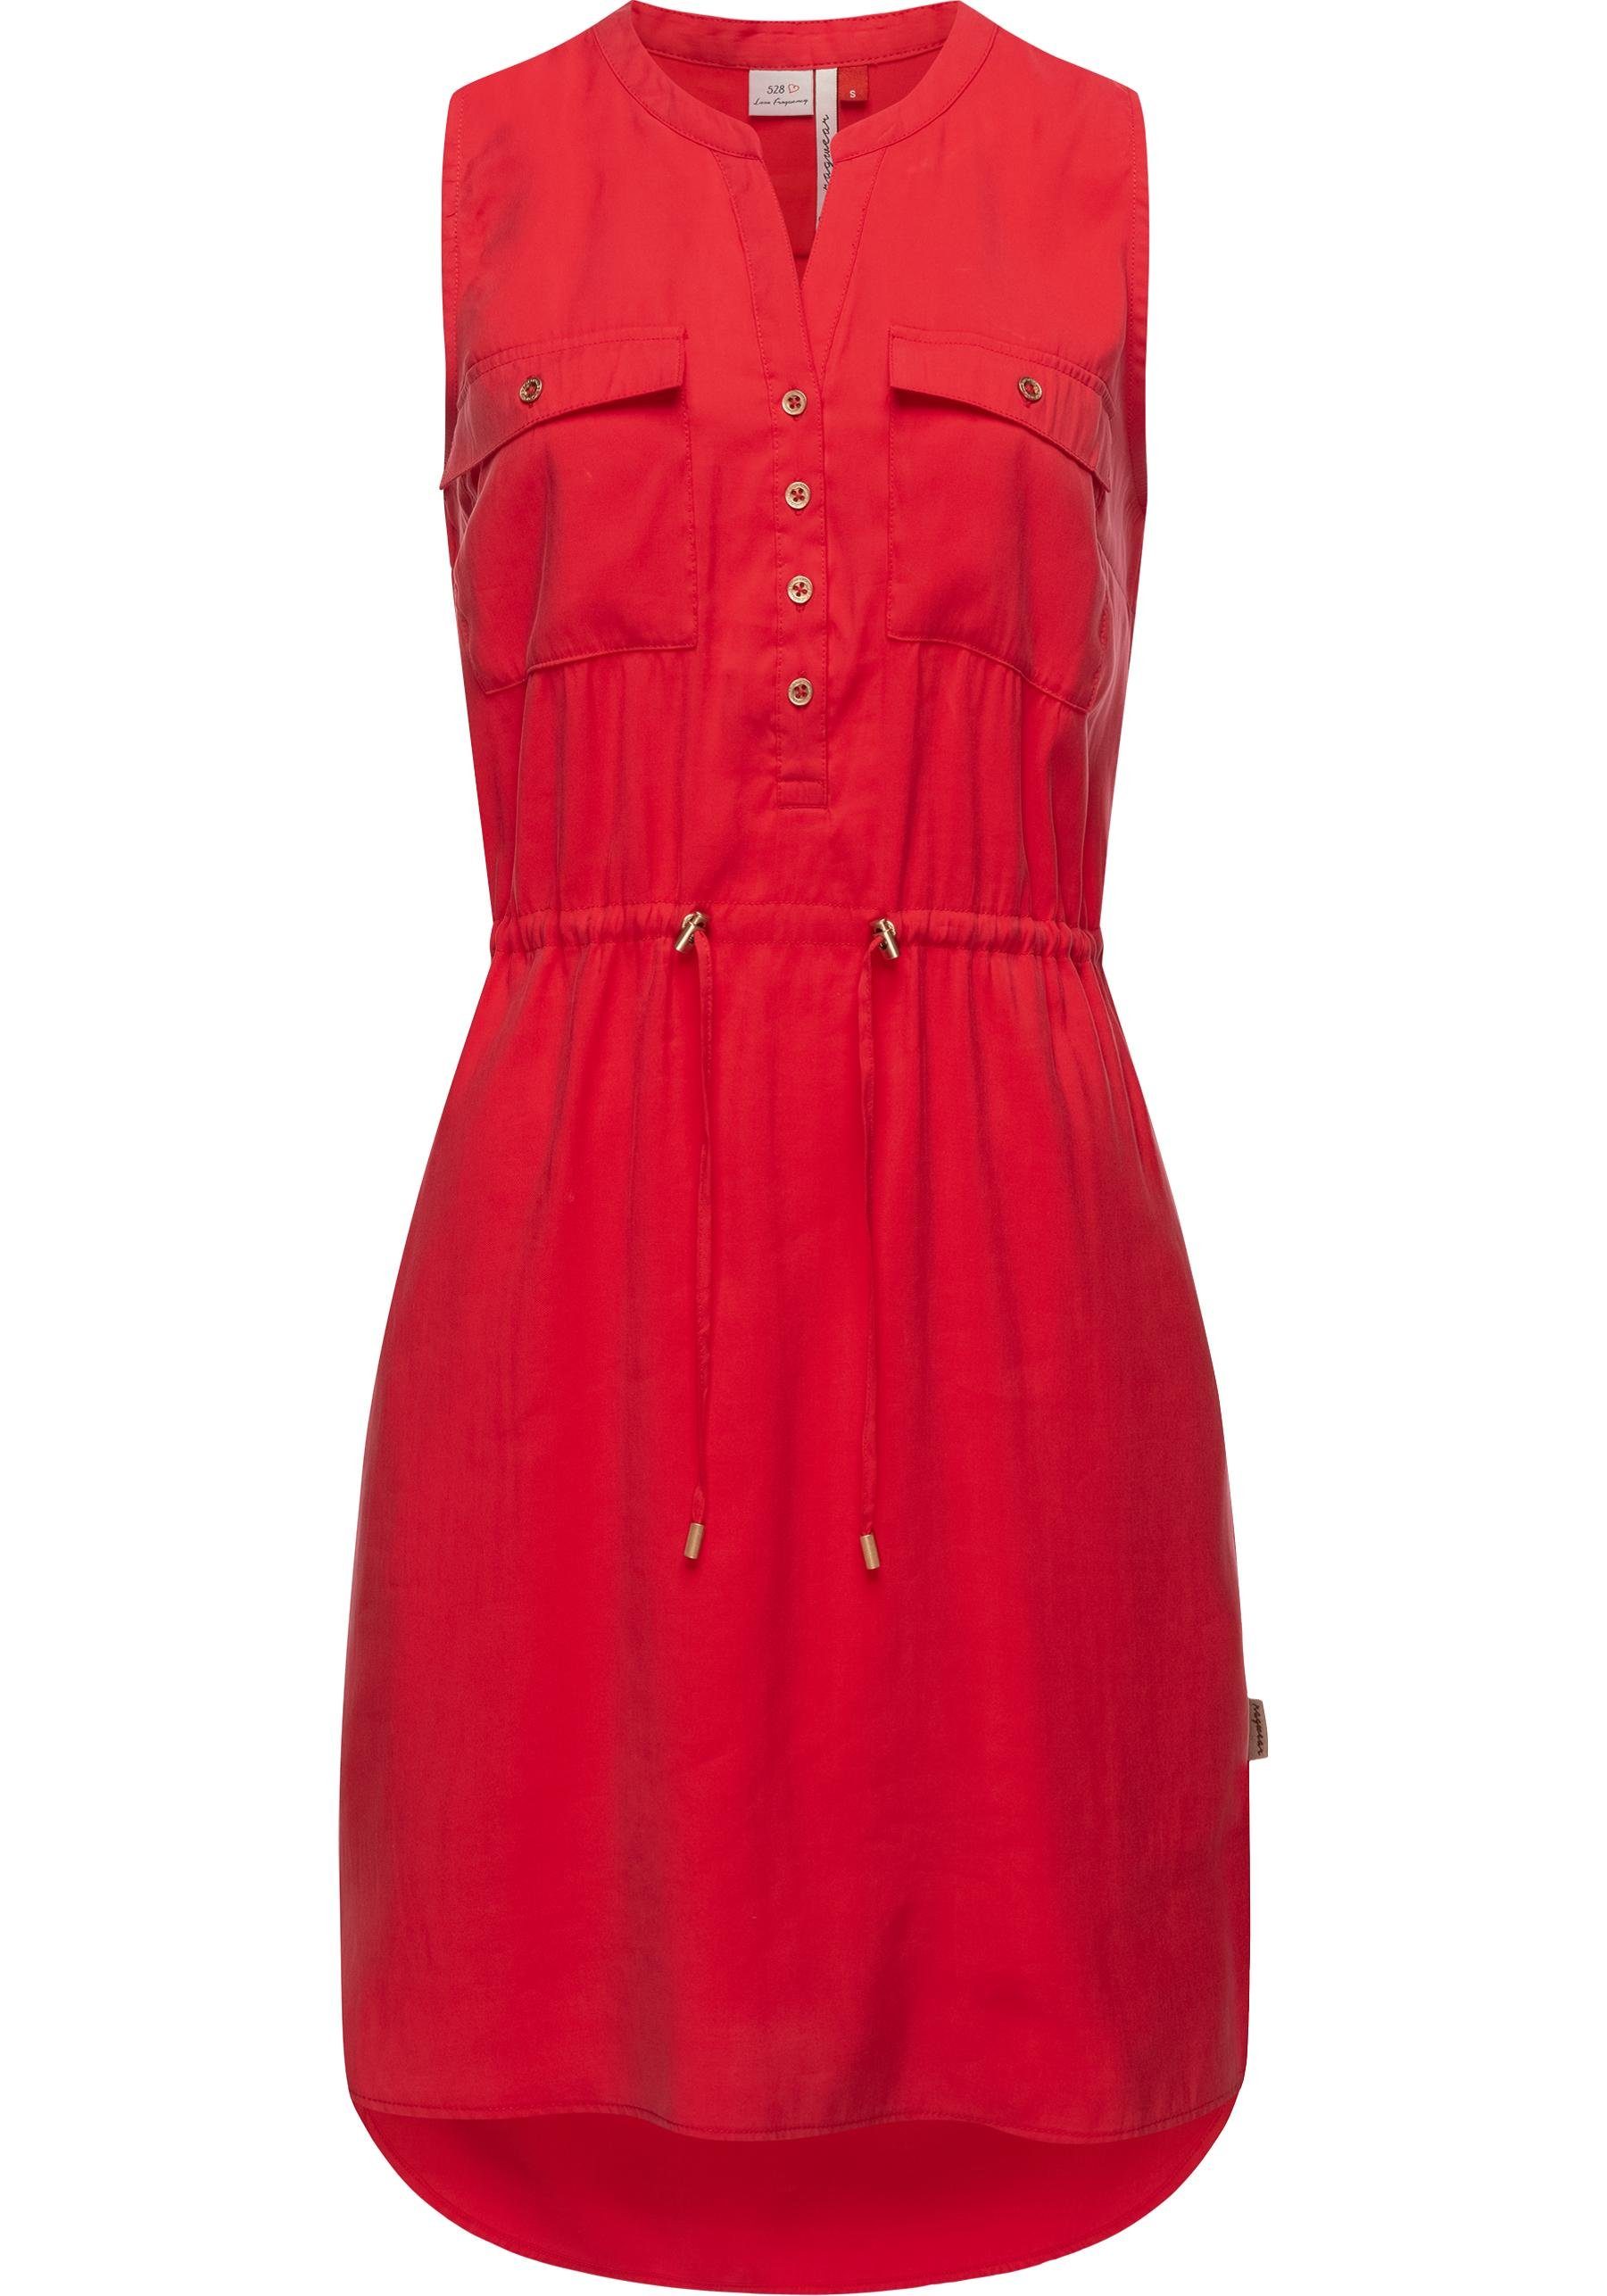 Ragwear Blusenkleid Roisin stylisches Sommerkleid mit Bindeband